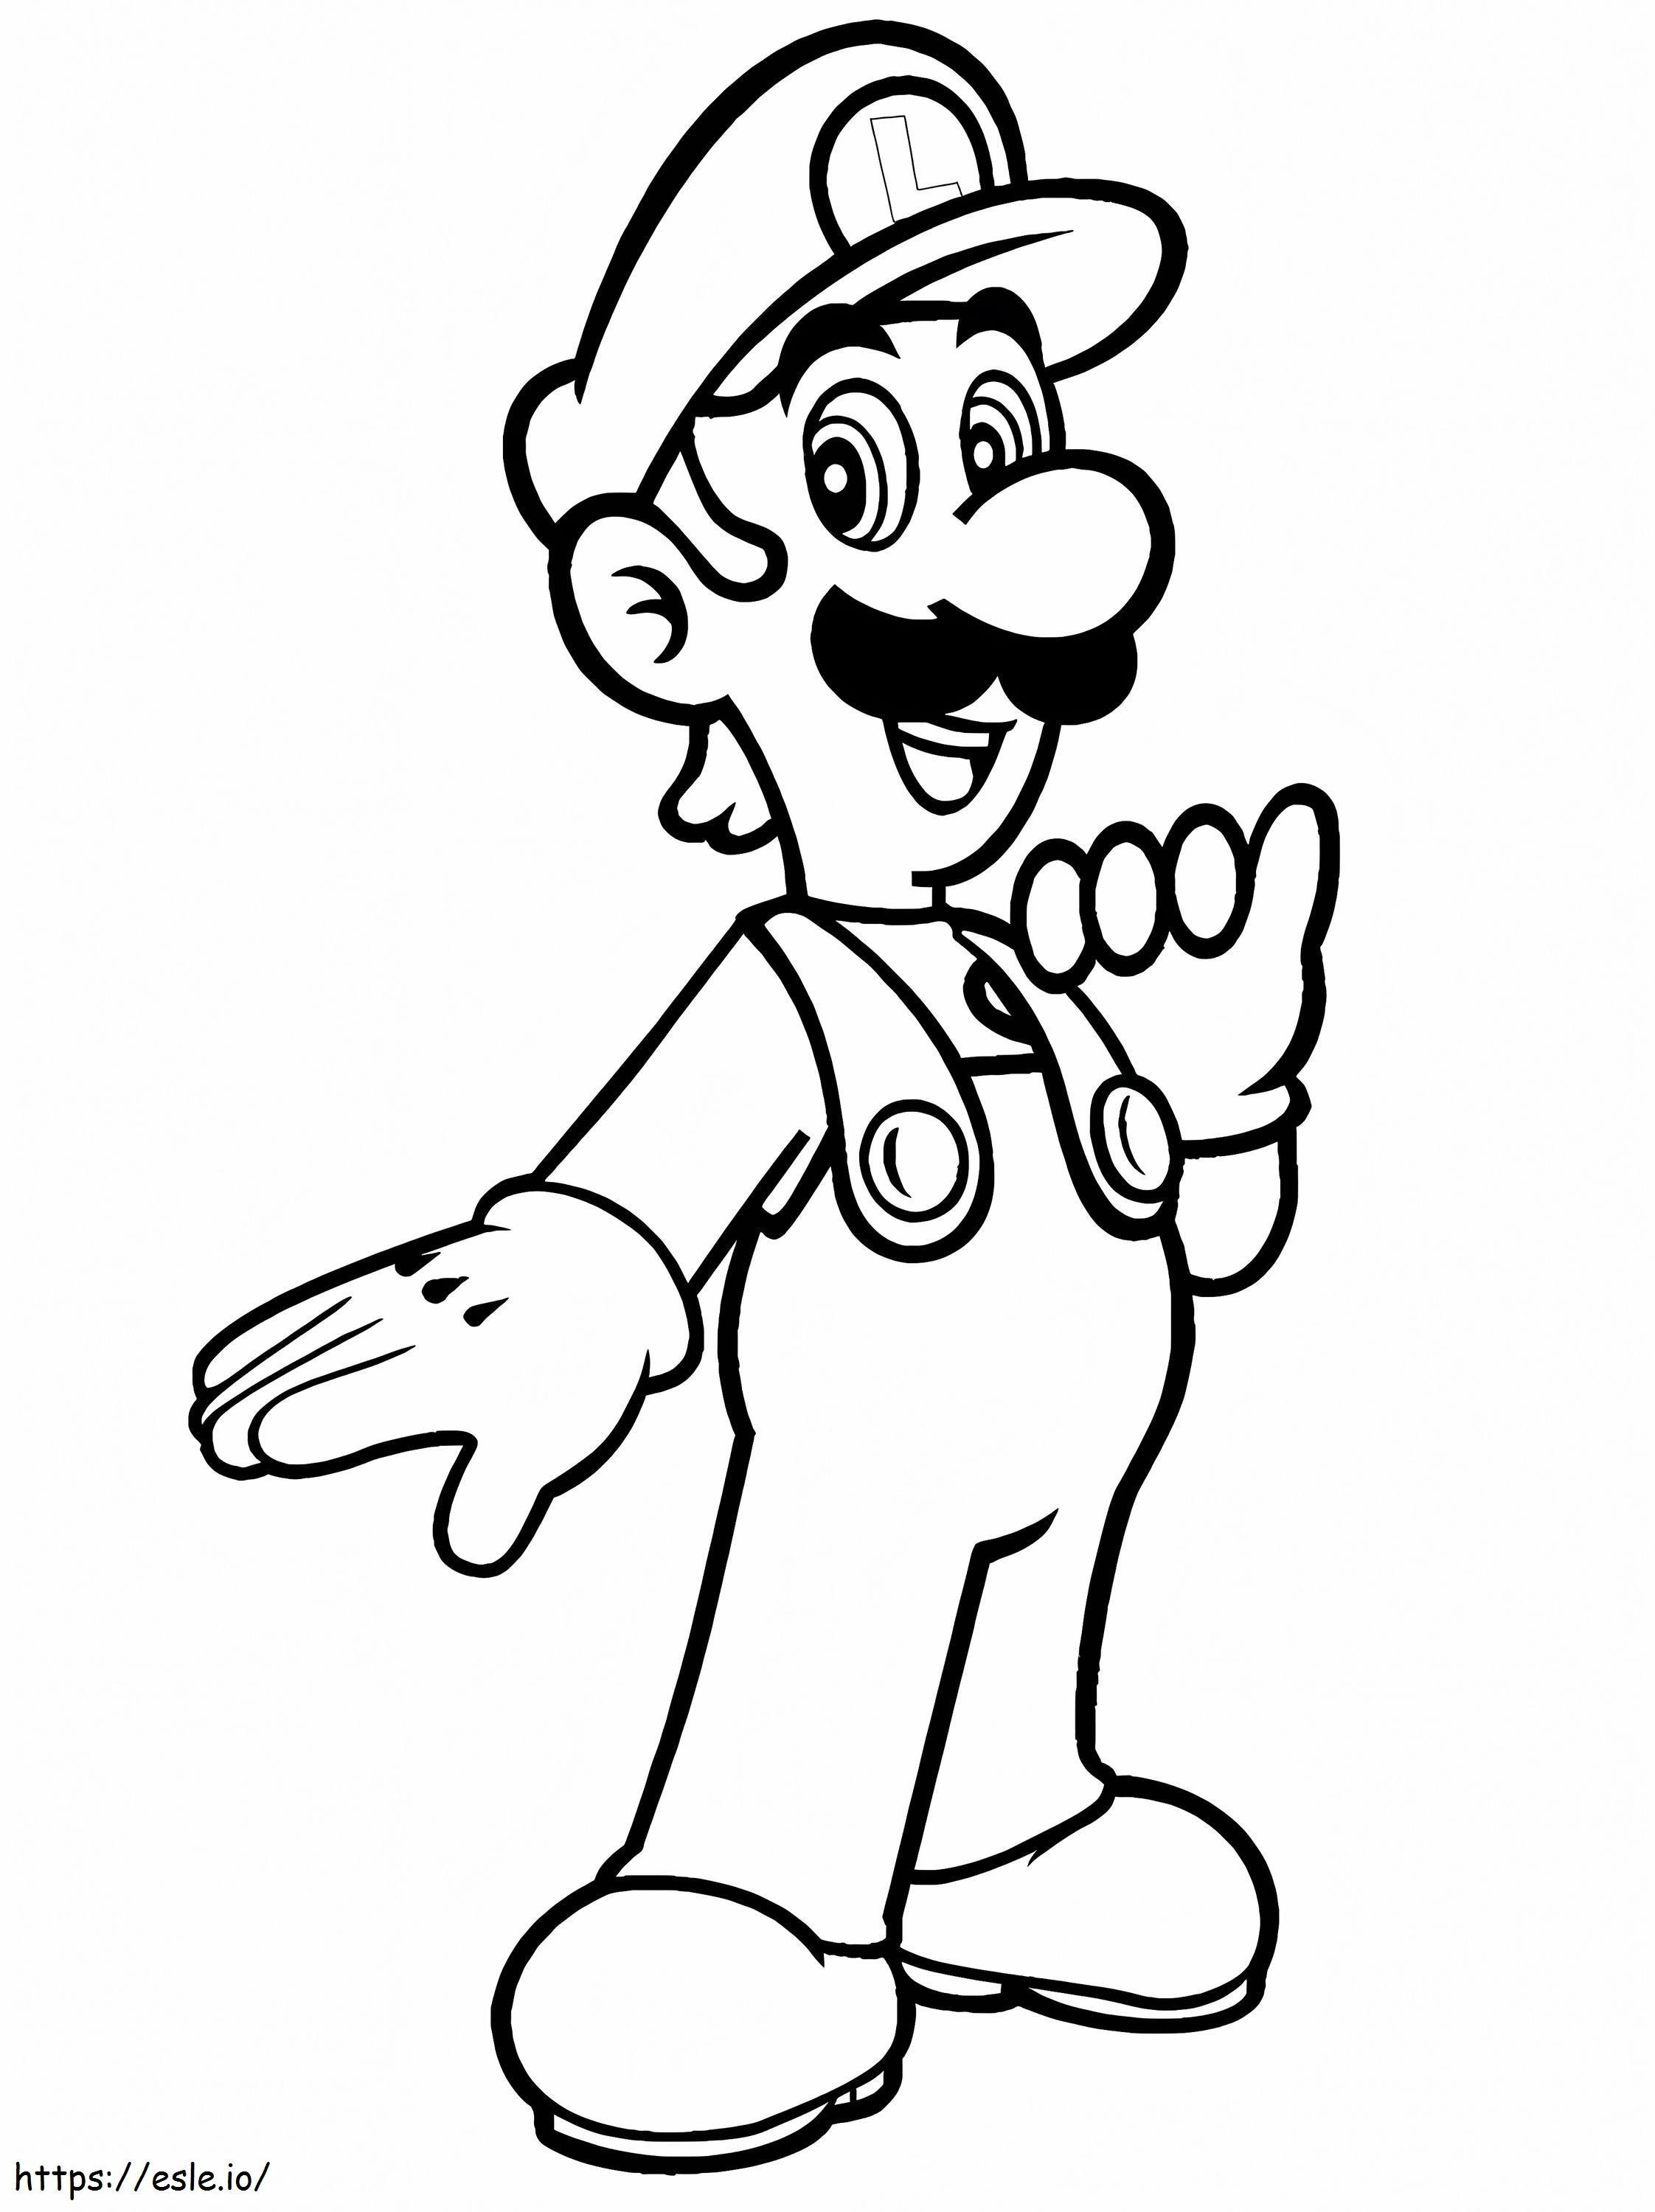 Louis De Super Mario 1 kolorowanka